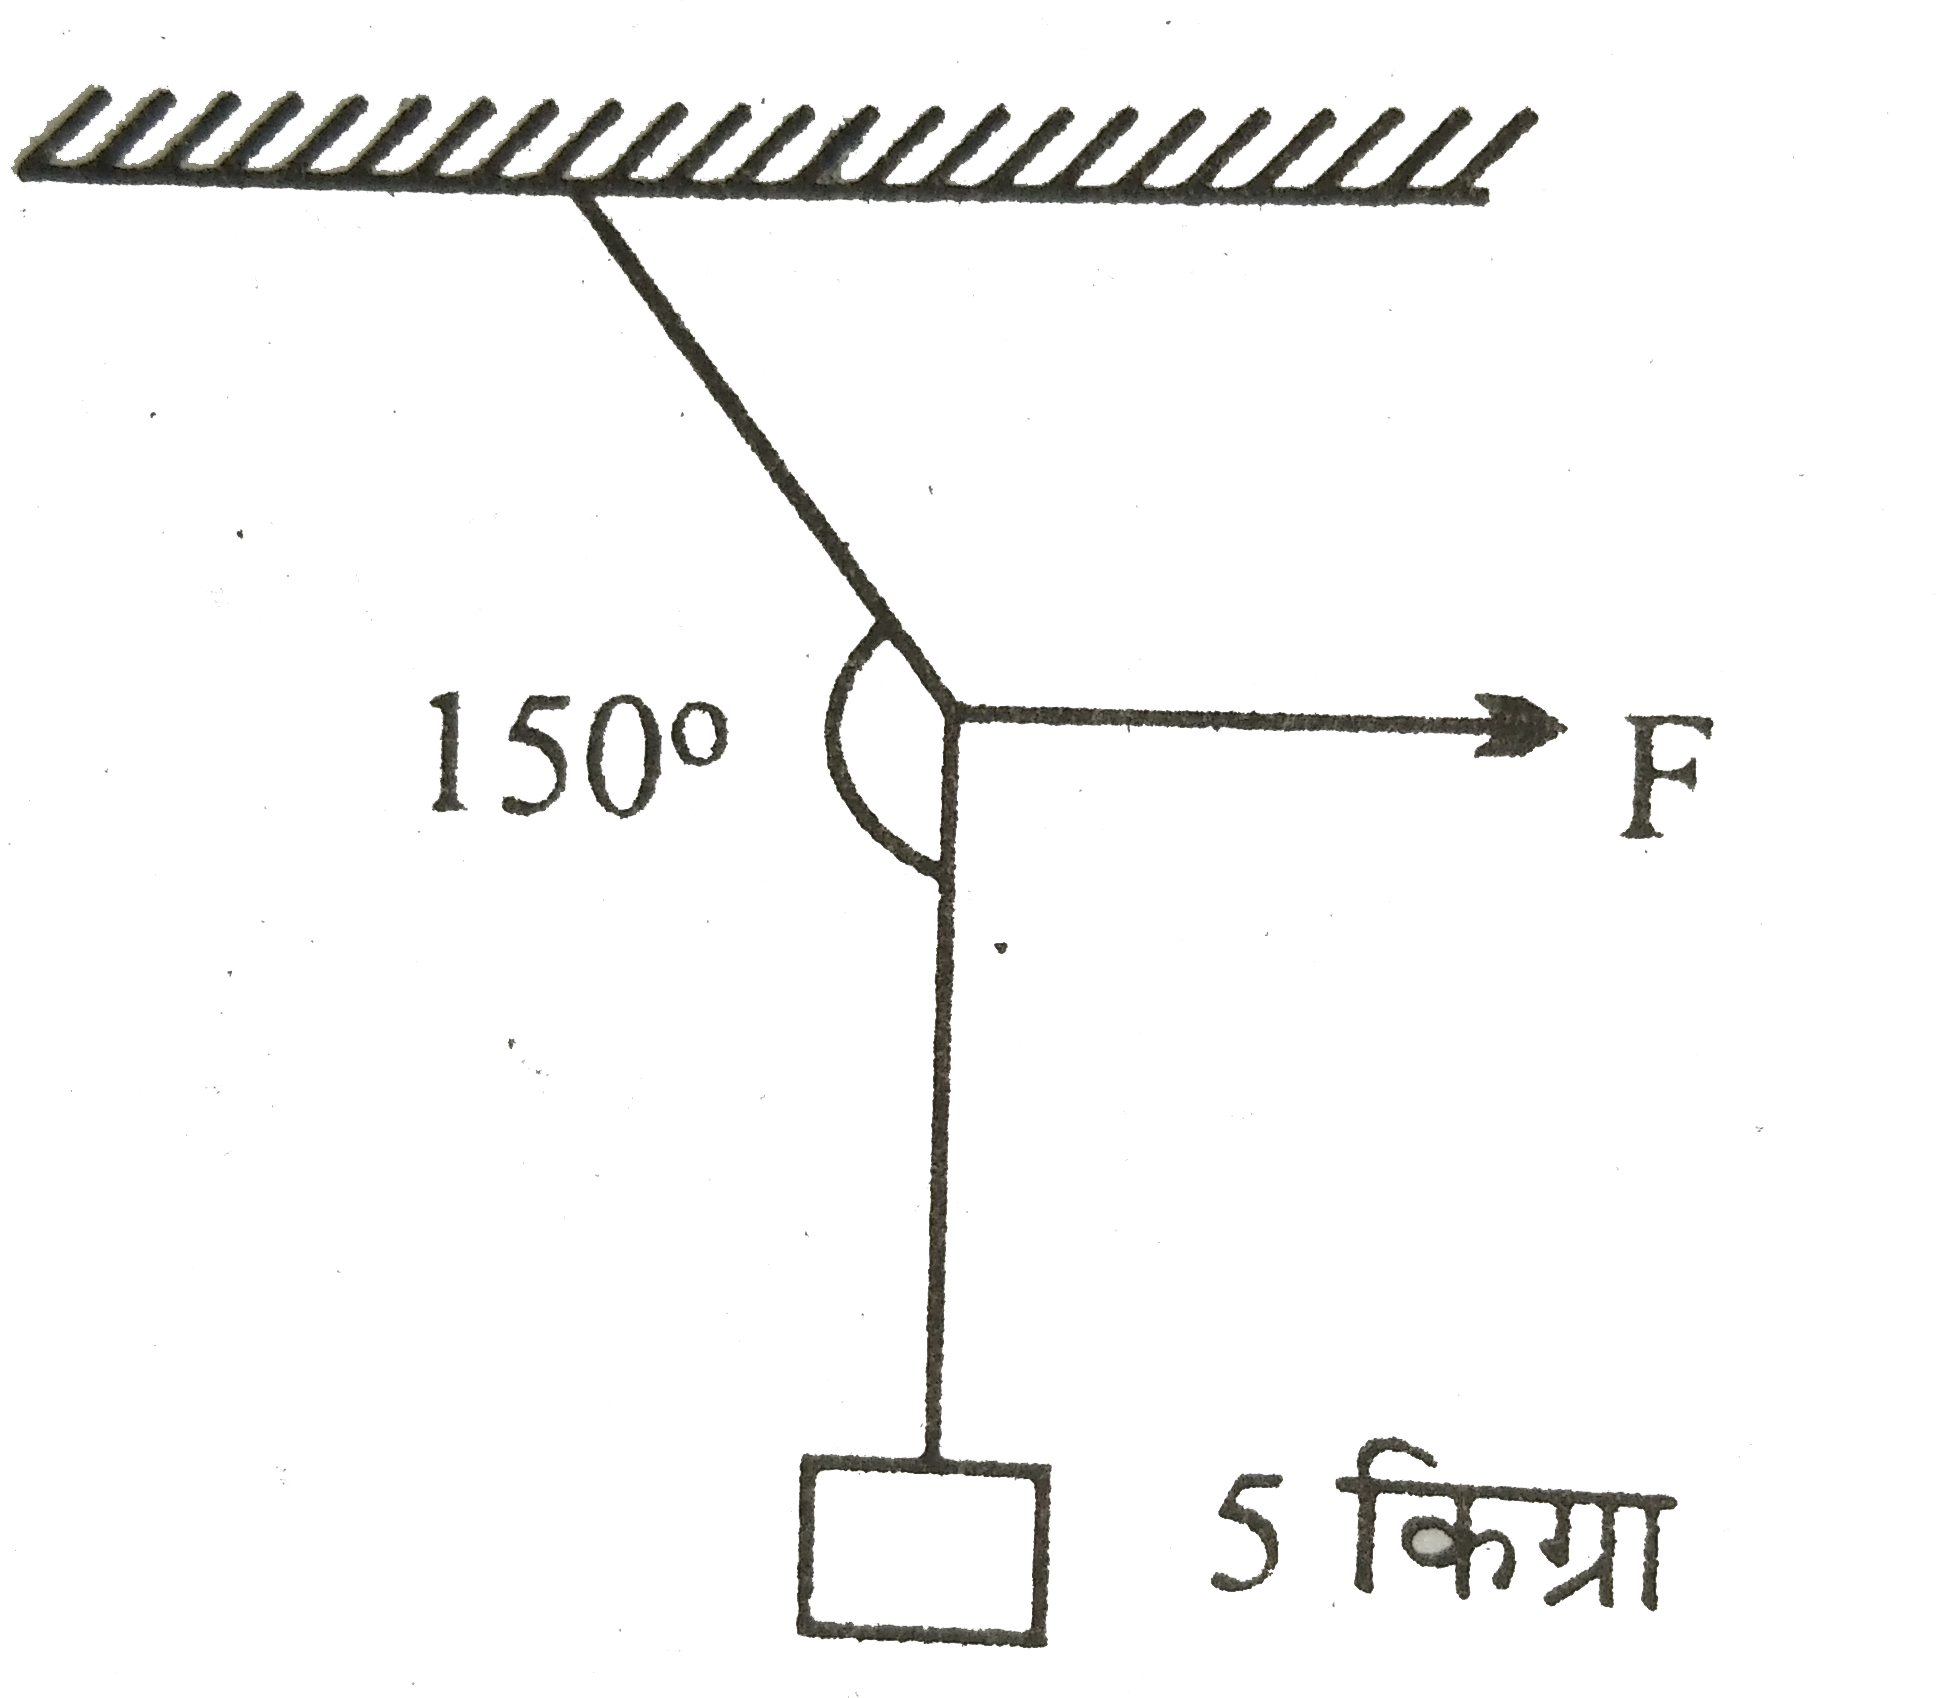 चित्र में दर्शाये अनुसार 5 किग्रा द्रव्यमान की एक वस्तु भारहीन डोरी से लटकाई गयी है । उस पर एक क्षैतिज बल f लगाया जाता है जिसके कारण डोरी के दोनों भागों के बीच 150^(@) का कोण बनता है । बल F और डोरी के ऊपरी भाग पर  तनाव ज्ञात कीजिए ।